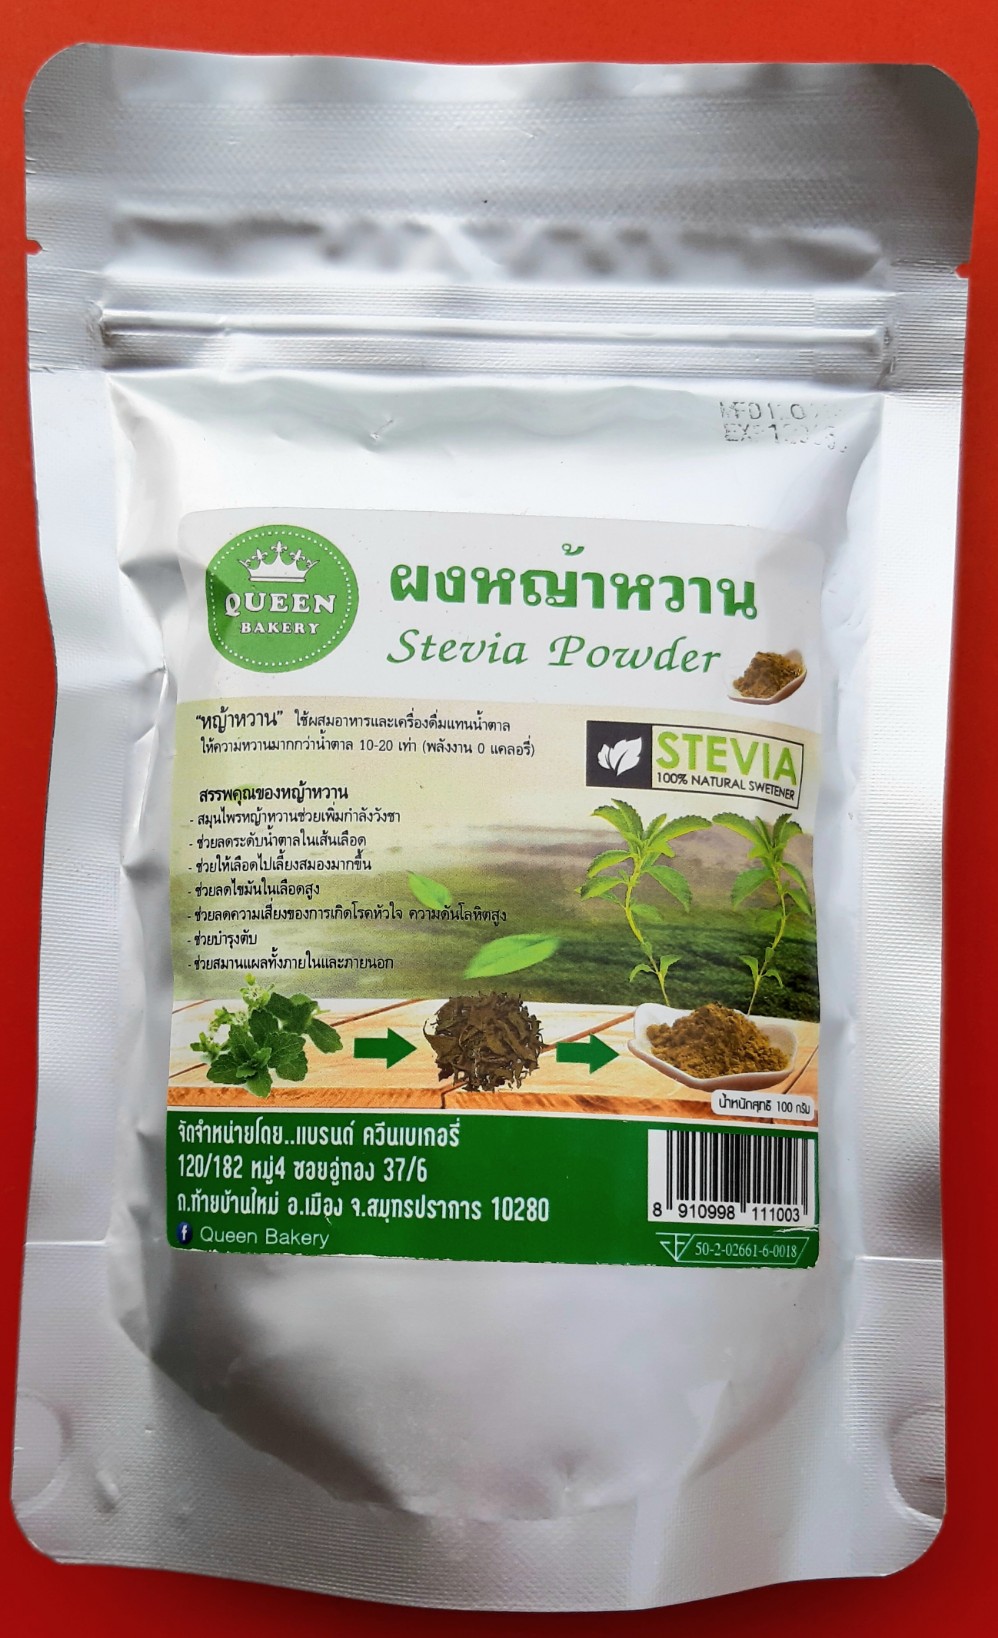 ผงหญ้าหวาน 100% Stevia powder ทำจากหญ้าหวานโดยธรรมชาติ น้ำหนัก 100 กรัม ใช้ผสมอาหารและเครื่องดื่มแทนน้ำตาล ดื่มได้อย่างปลอดภัย เพื่อสุขภาพ